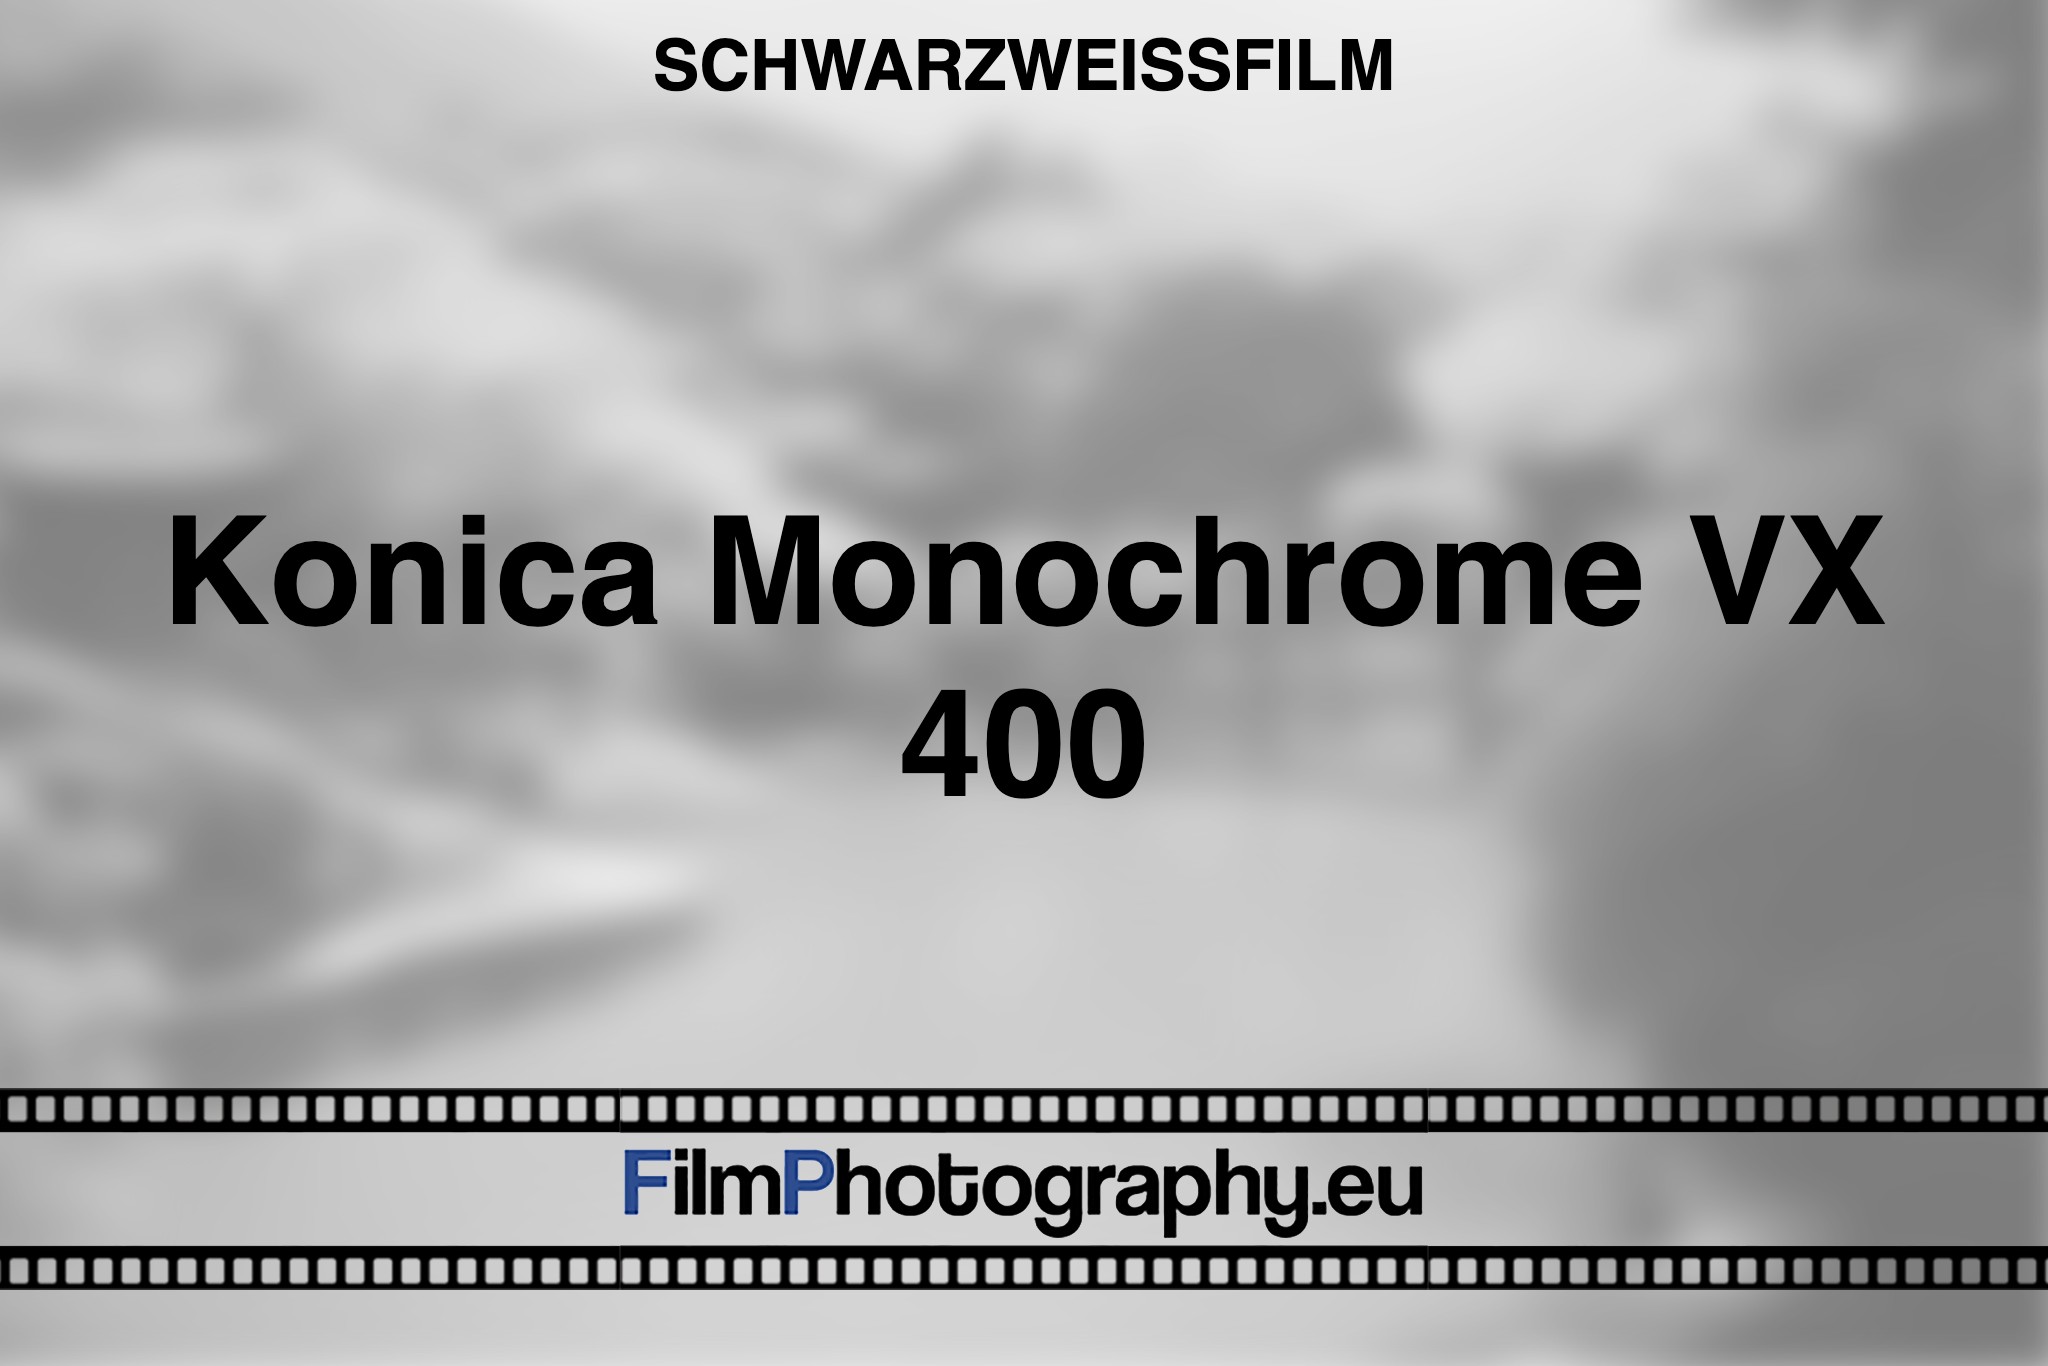 konica-monochrome-vx-400-schwarzweißfilm-bnv